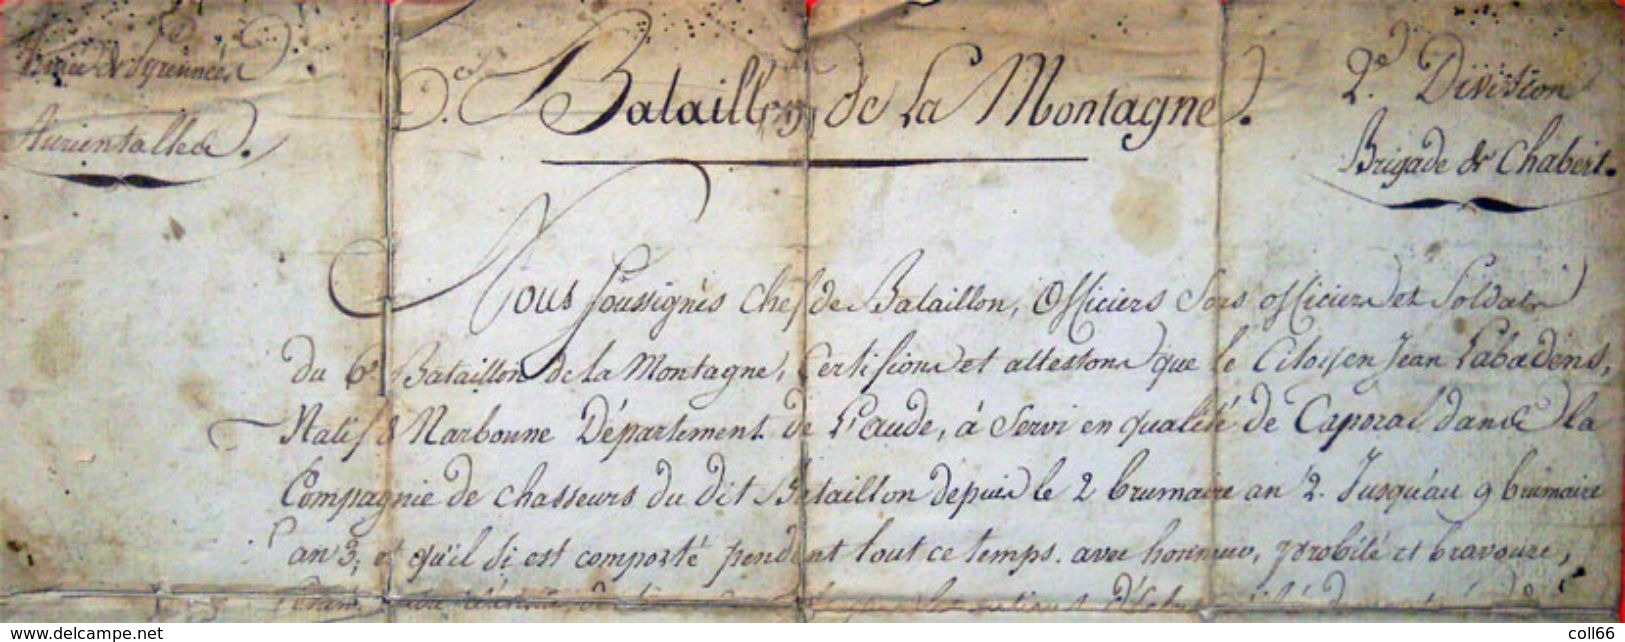 1793-4 Armée Des Pyrénées Orientales Bataillon De Montagne Catalunya Révolution Caporal Prise Fort Bellegarde Le Perthus - Historical Documents